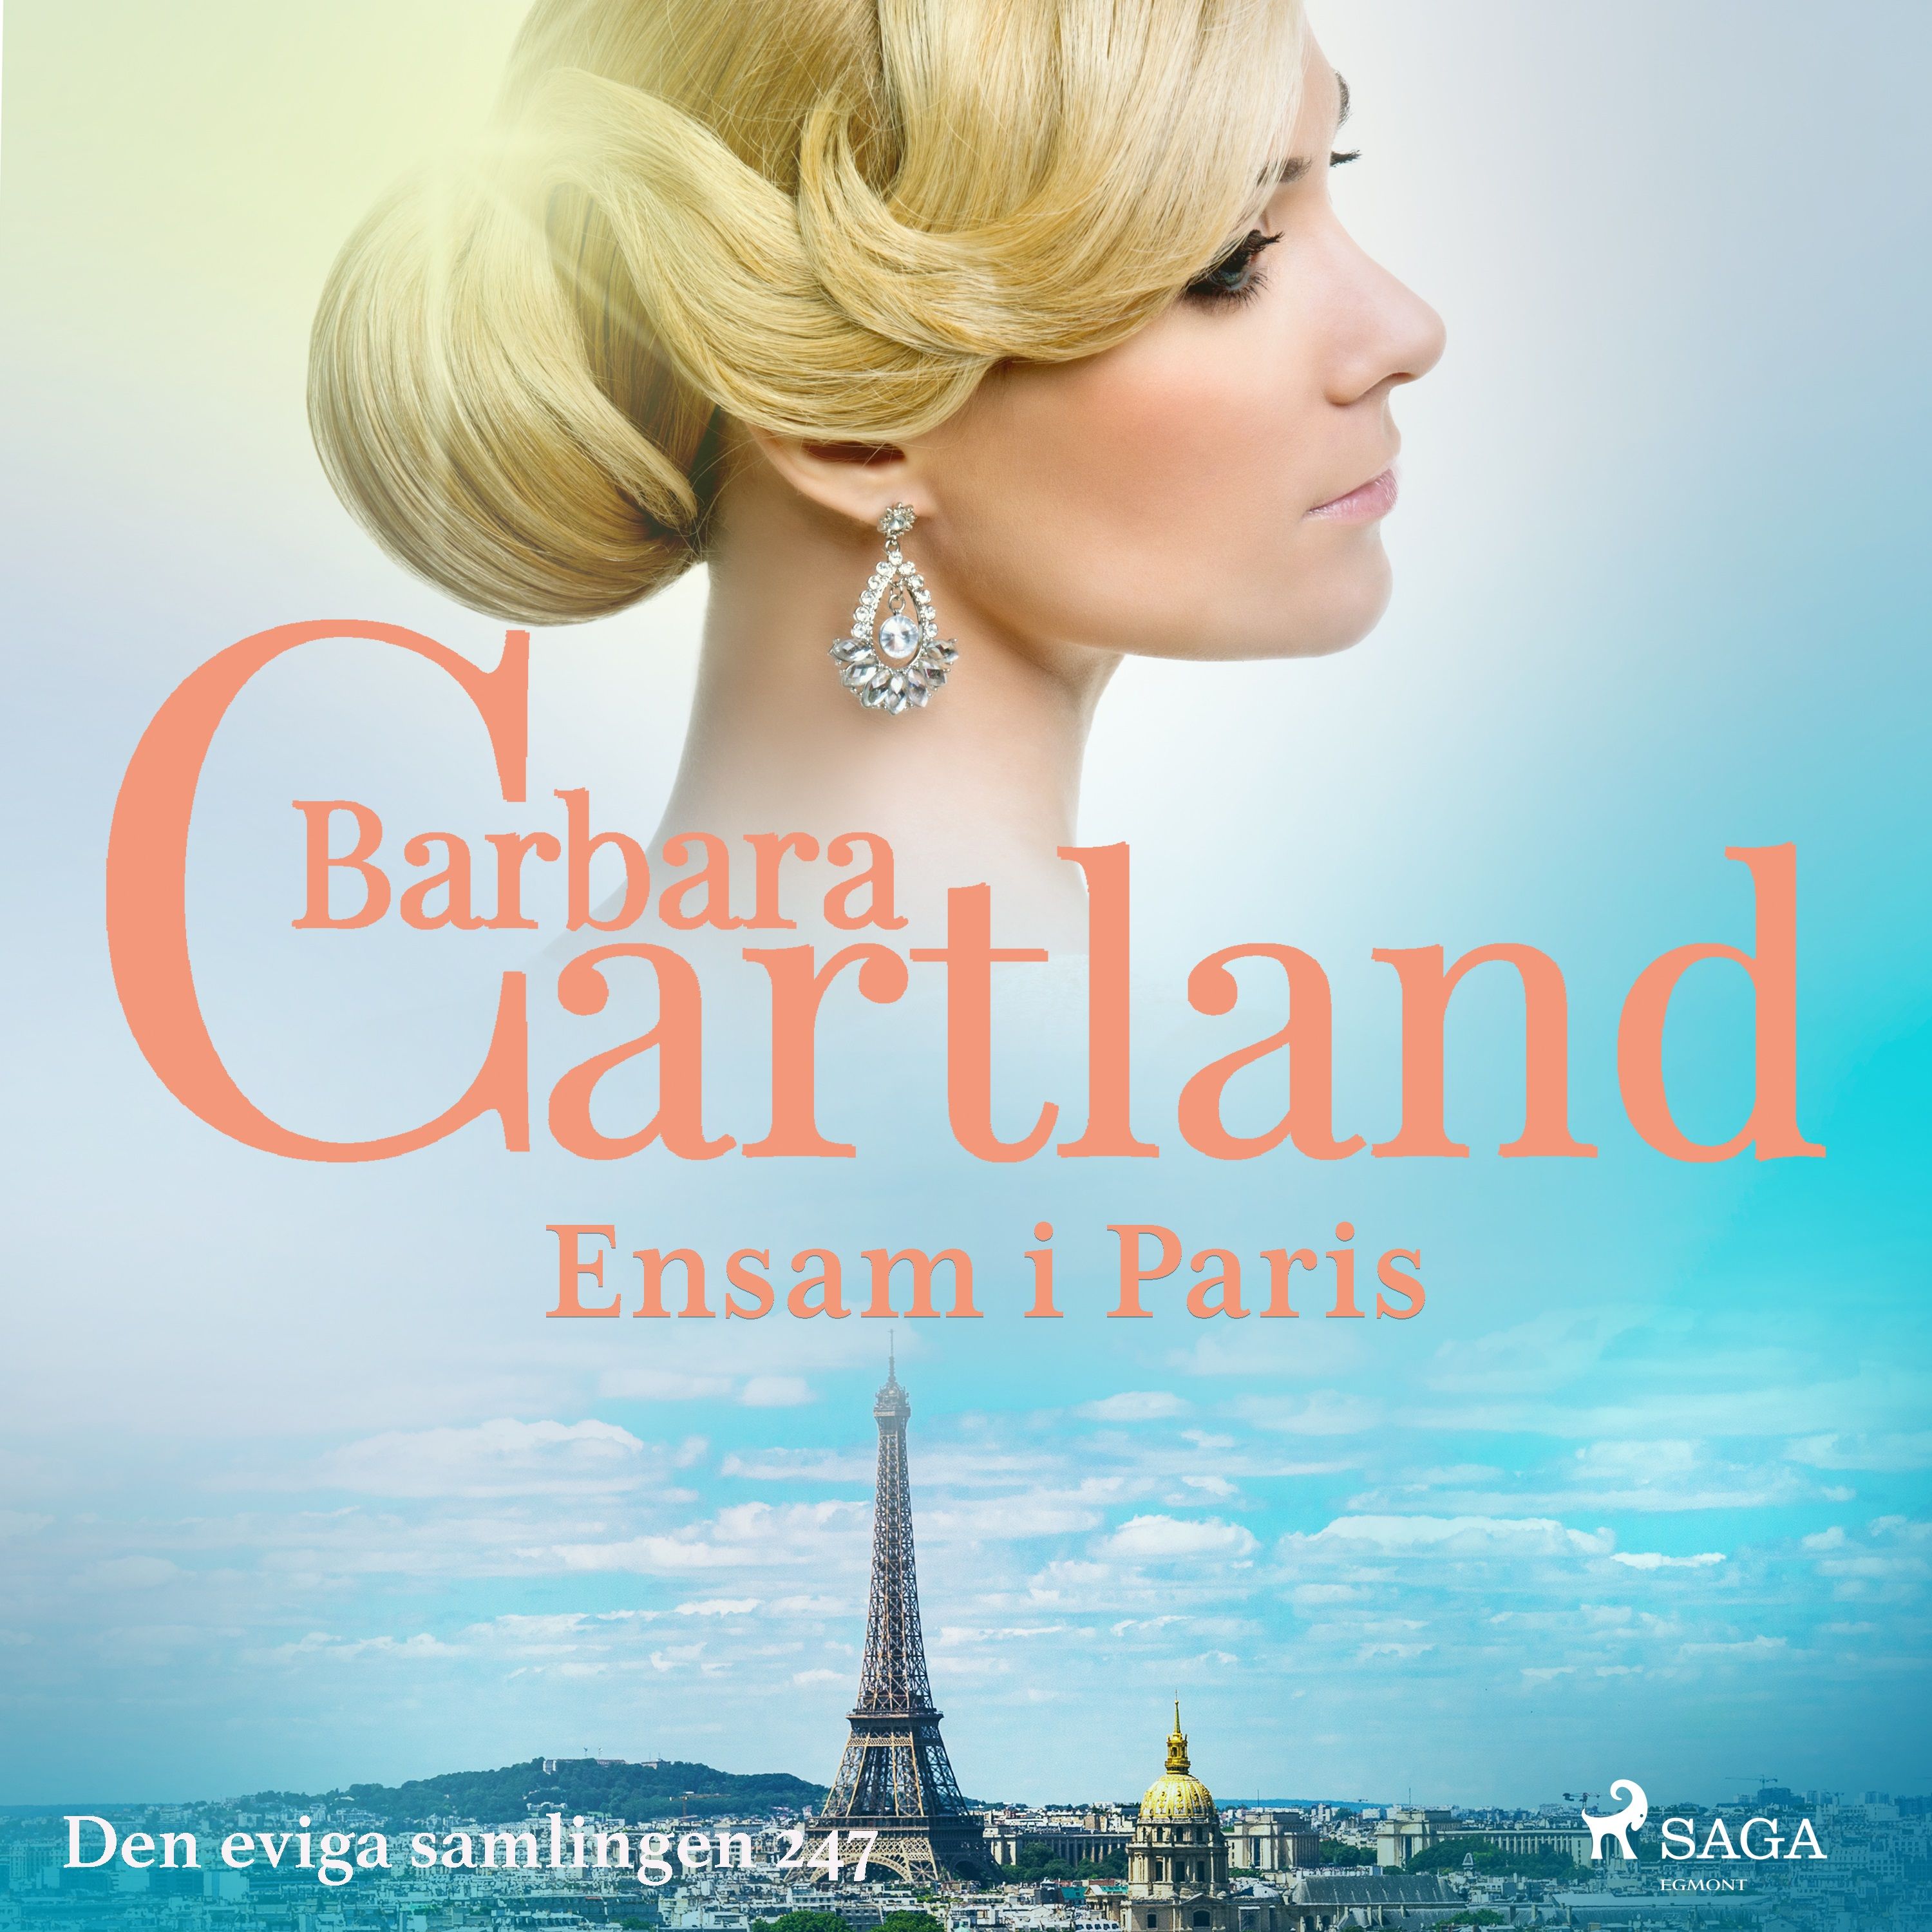 Ensam i Paris, audiobook by Barbara Cartland